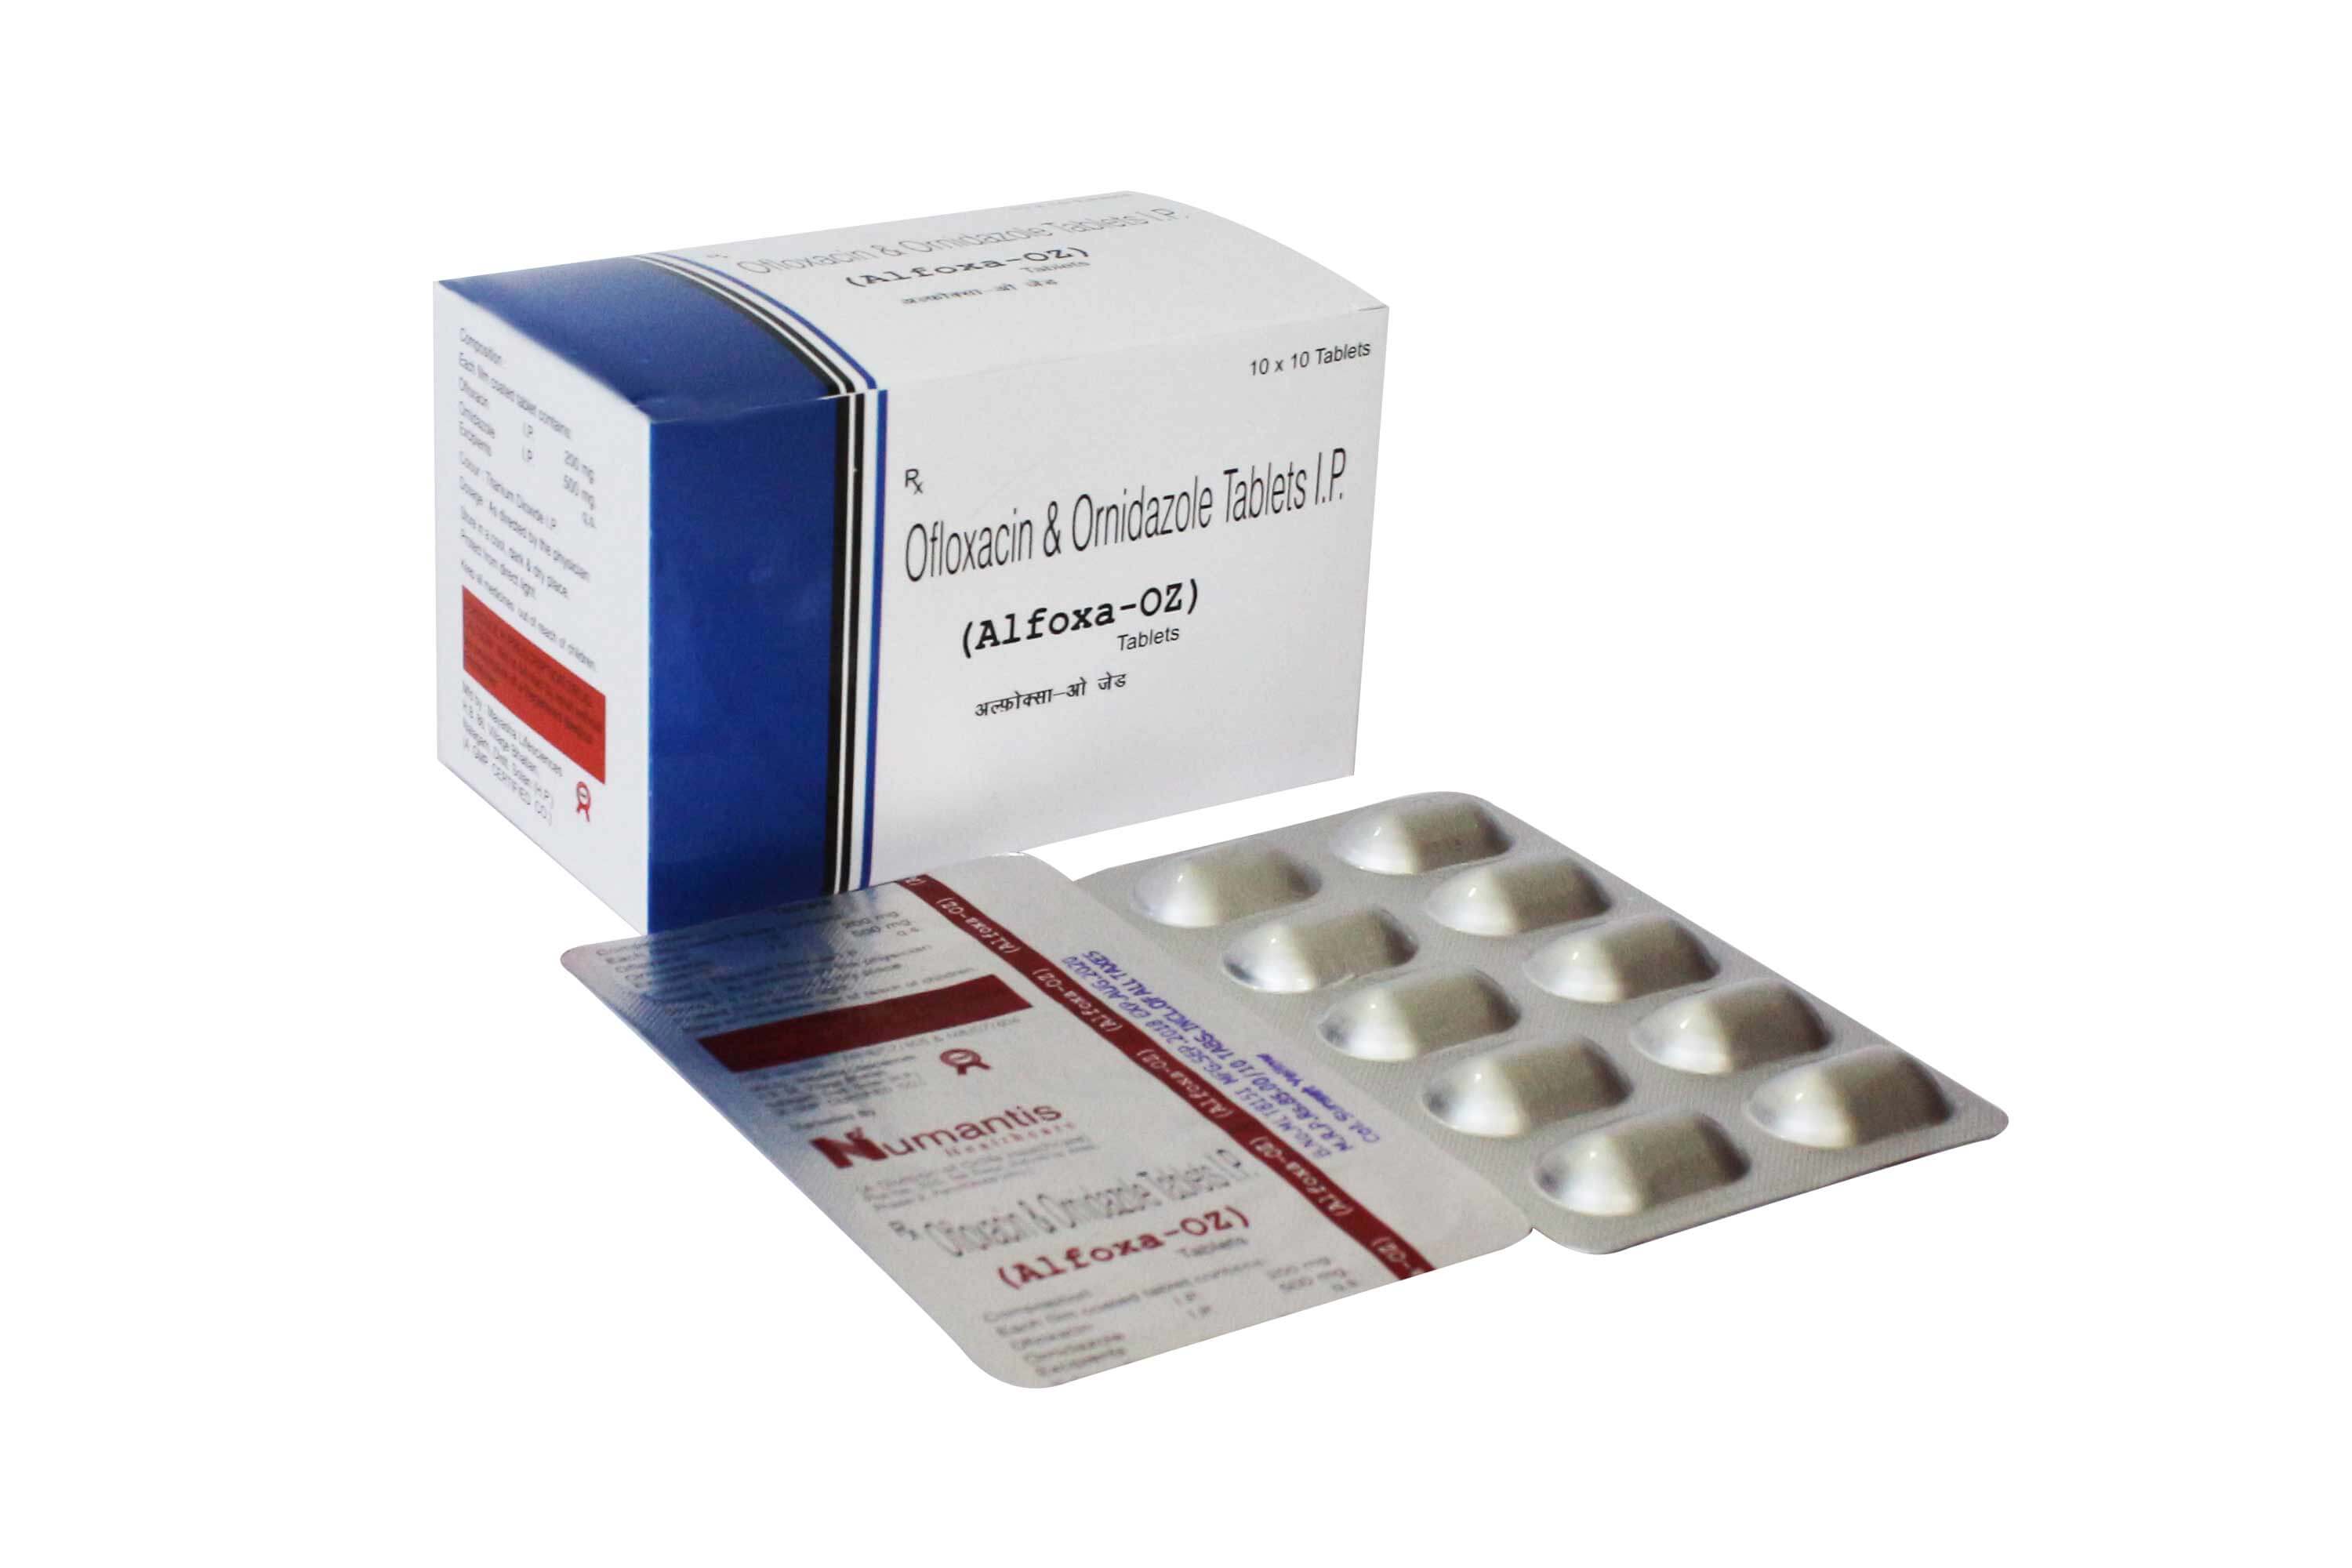 Product Name: Alfoxa OZ, Compositions of Alfoxa OZ are Ofloxacin & Ornidazole Tablets - Numantis Healthcare